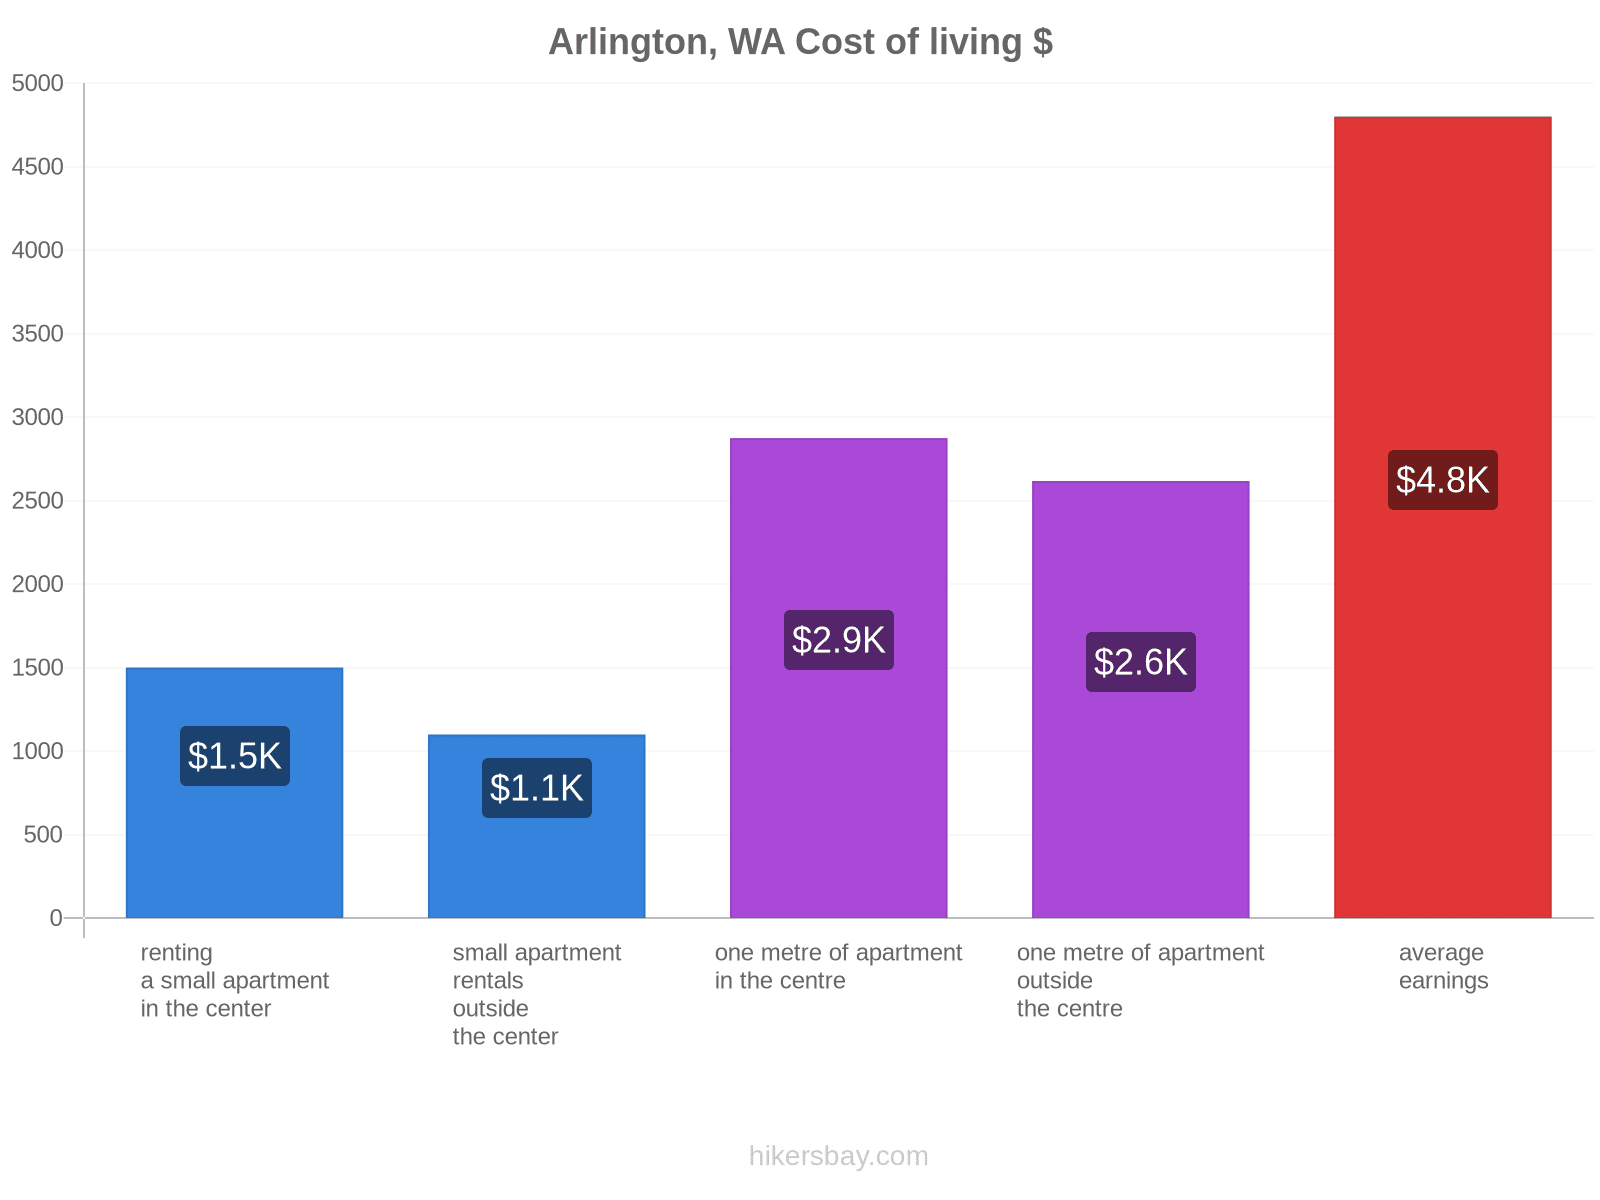 Arlington, WA cost of living hikersbay.com